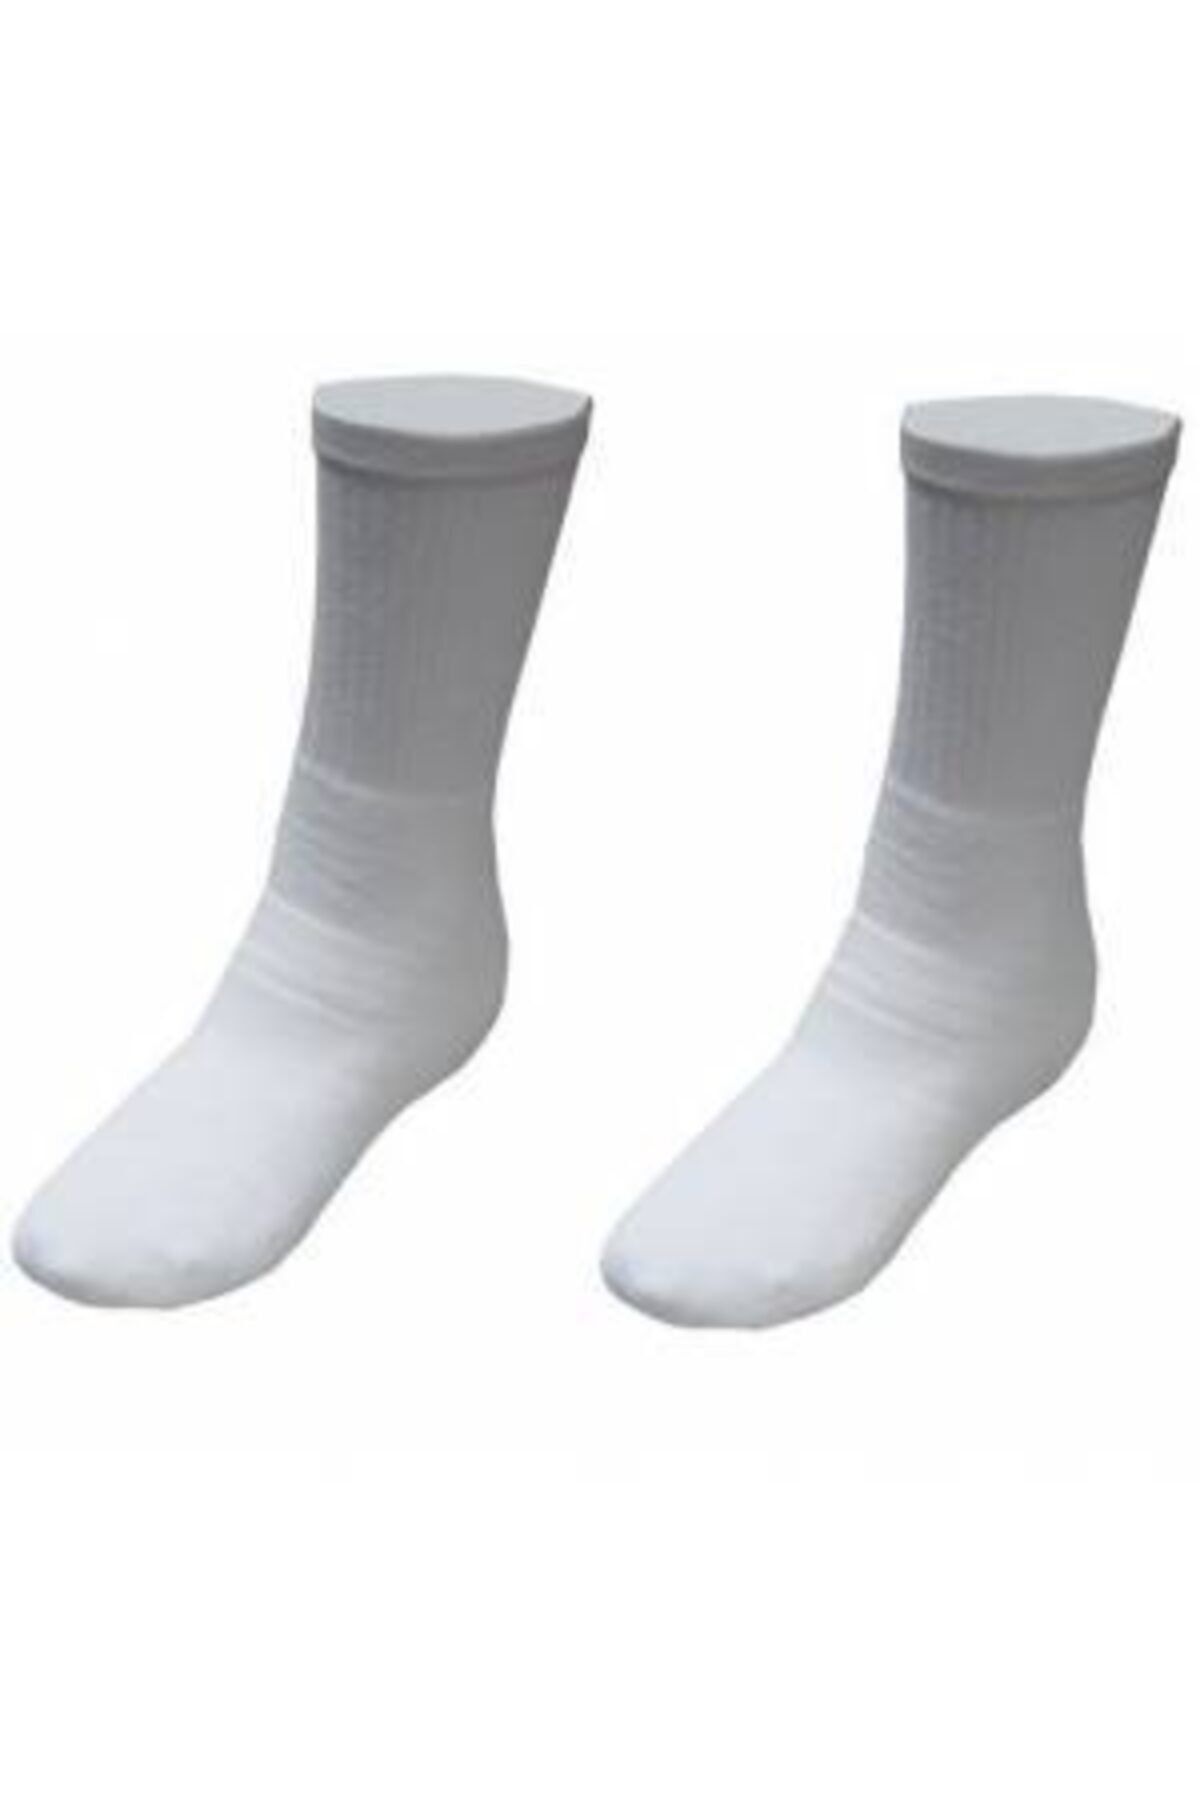 Evox Beyaz Topuksuz Havlu Spor Çorap 40-47 No